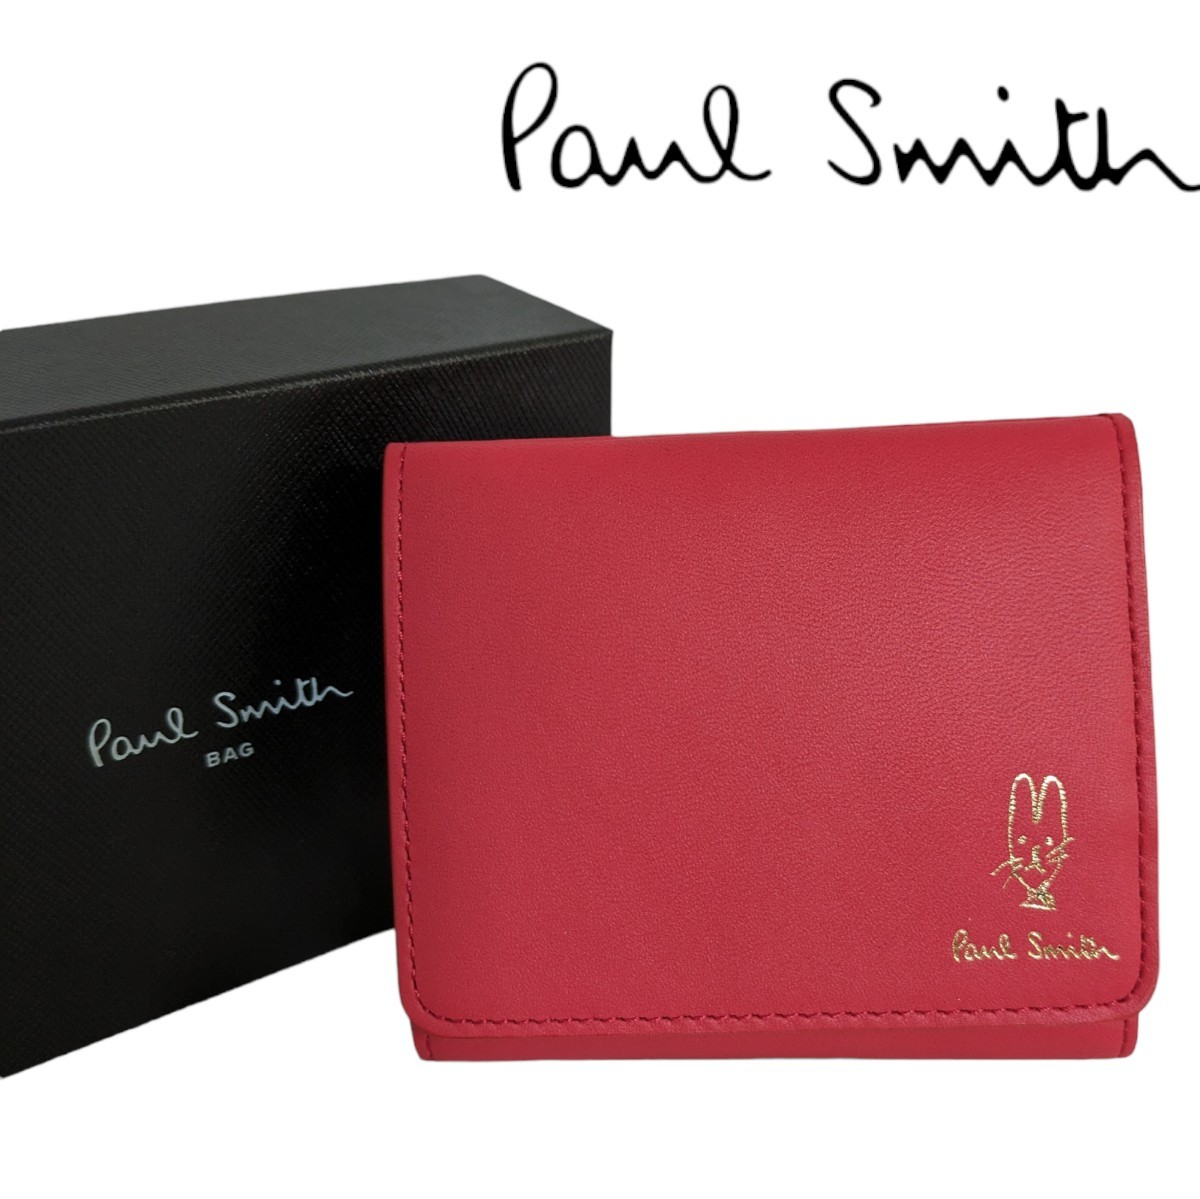 新品 ポールスミス Paul Smith 二つ折り財布 コンパクト バルーンバニー 箱付き レッド スワール ラビット レディース